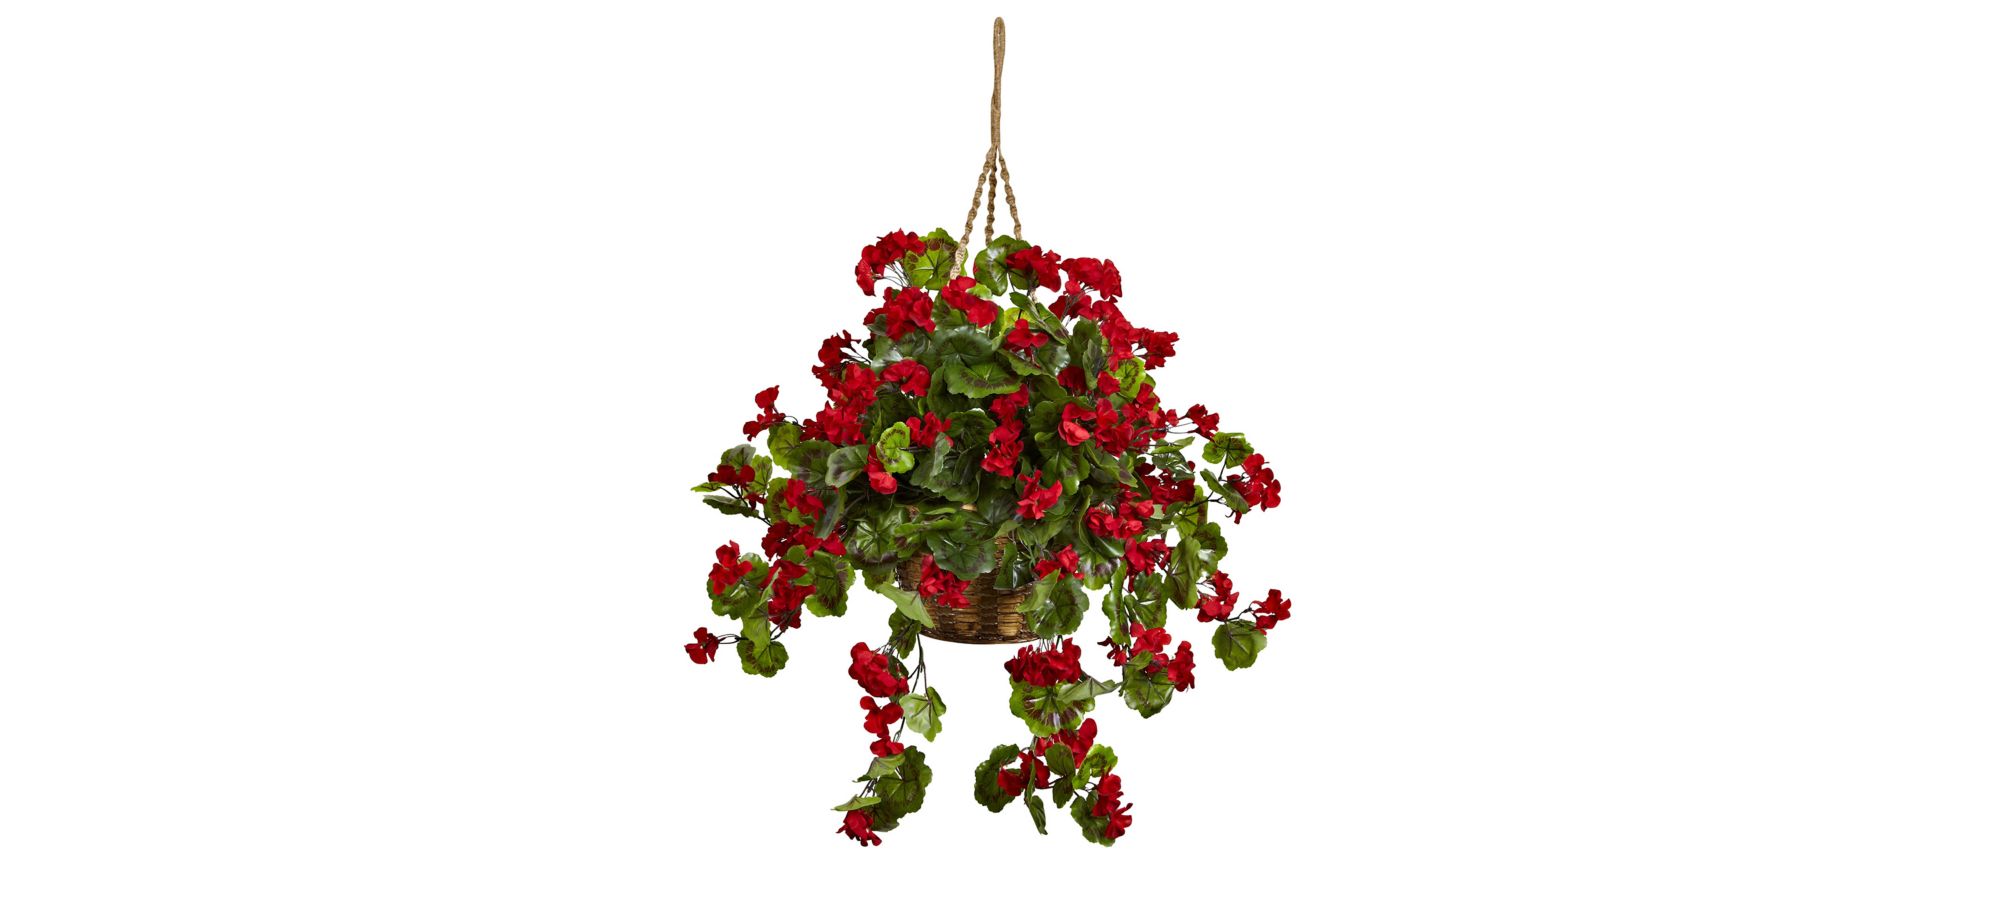 Geranium Hanging Basket (Indoor/Outdoor) in Red by Bellanest